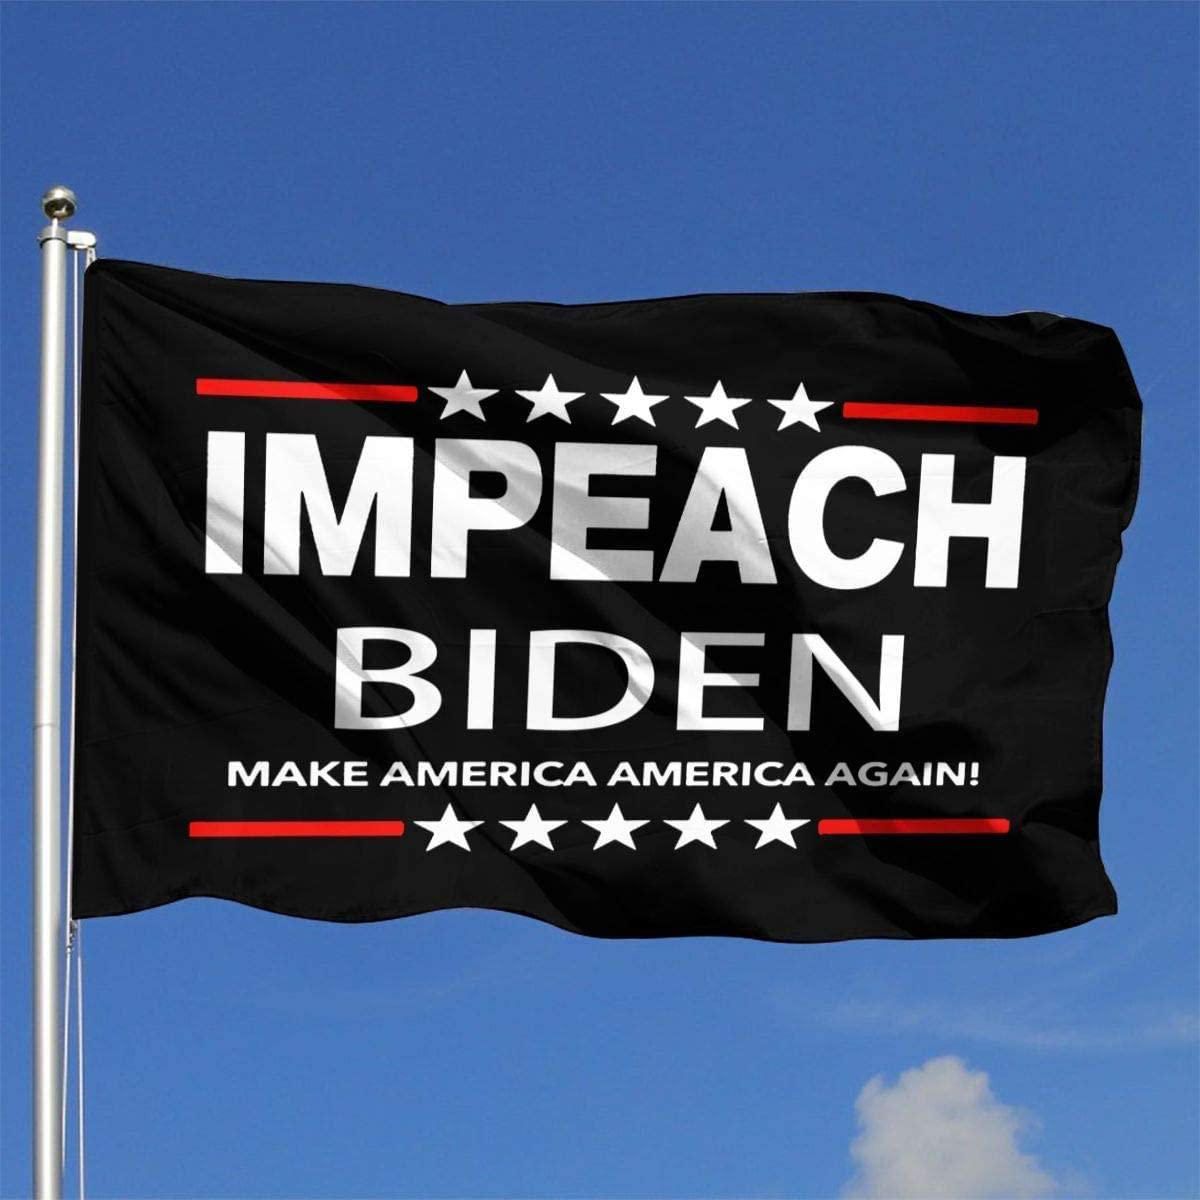 Here is Trump’s Plan to Impeach Biden